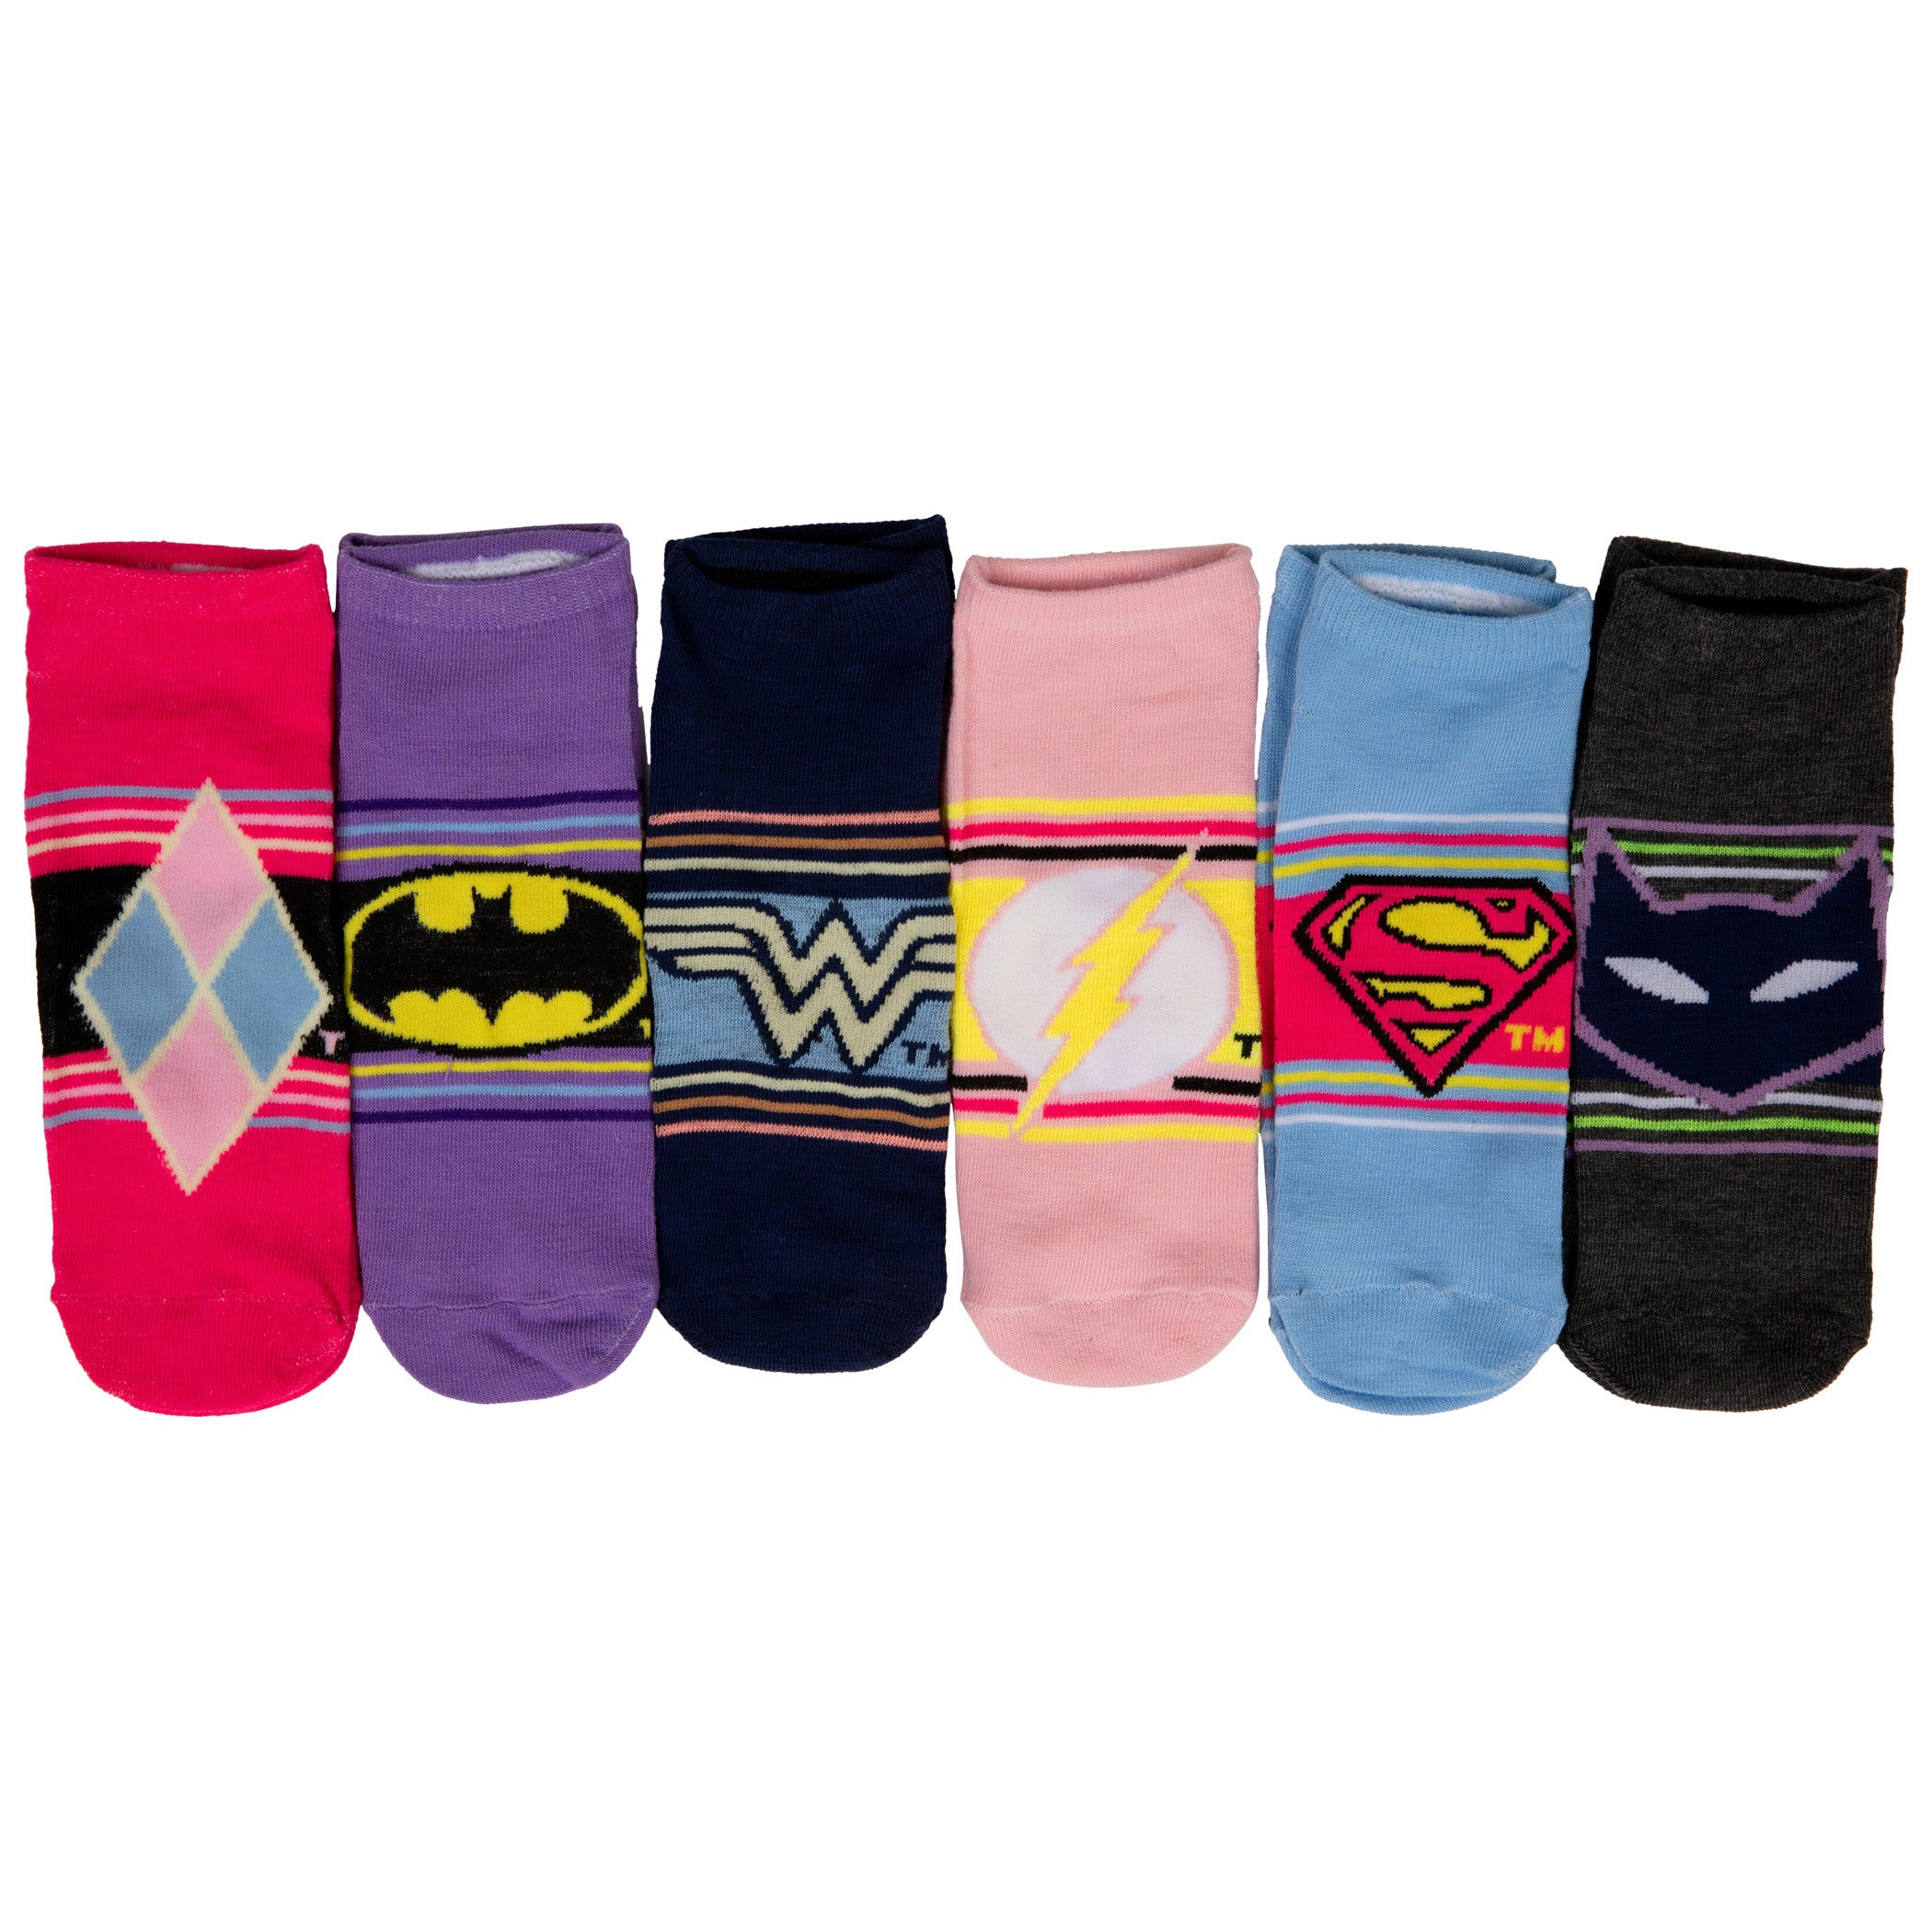 DC Comics Heroine Logos and Symbols Women's 6-Pack of Shorties Socks